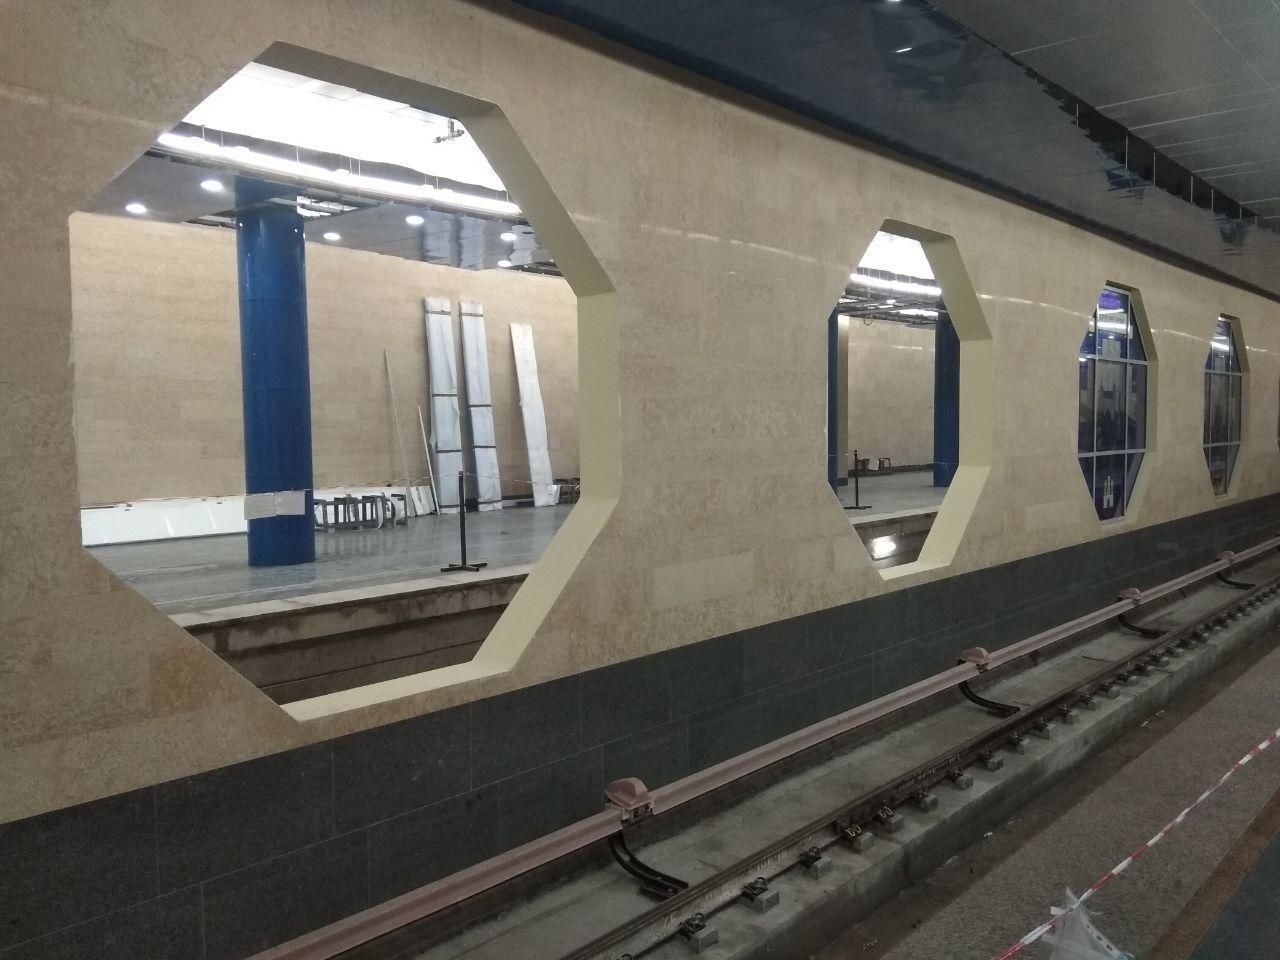 Точная дата открытия нового участка Фрунзенского радиуса метро станет известна в последних числах лета 